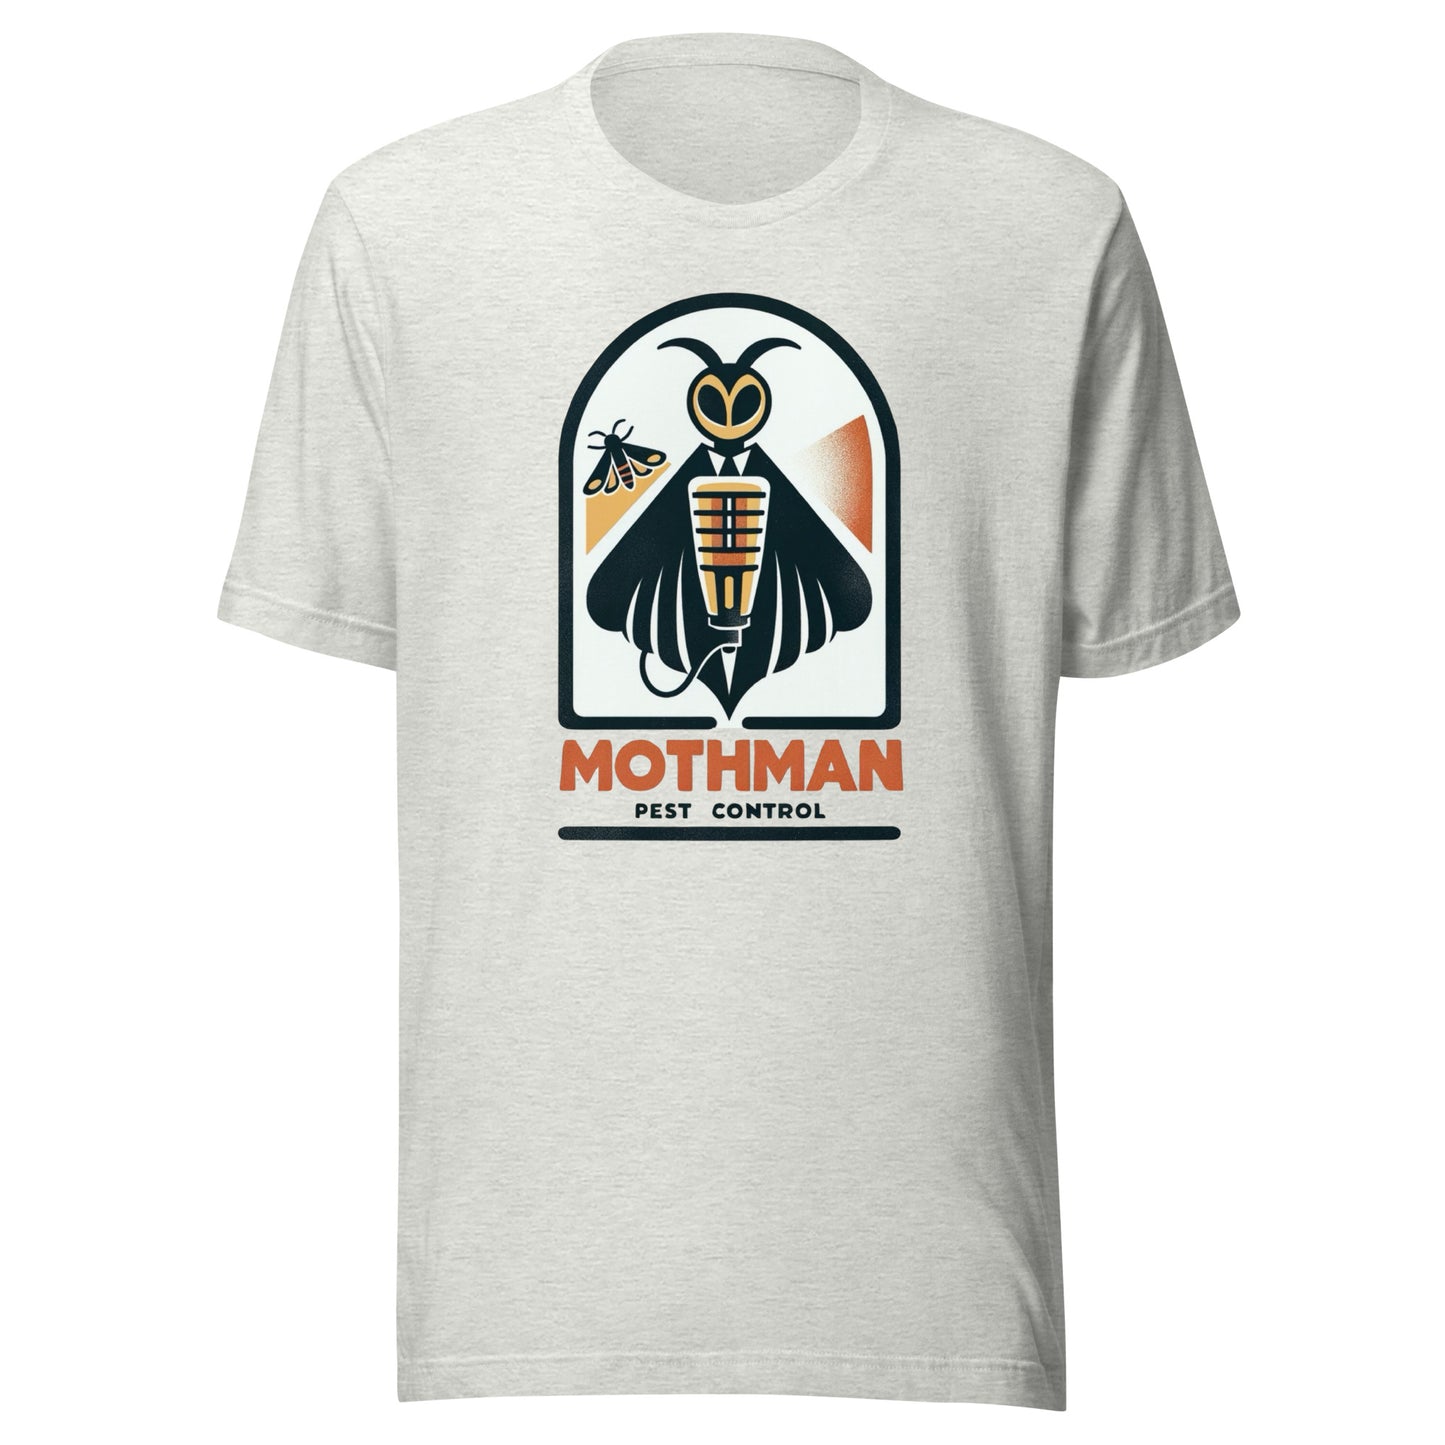 Mothman Pest Control - Mothman holding a bug zapper Unisex t-shirt